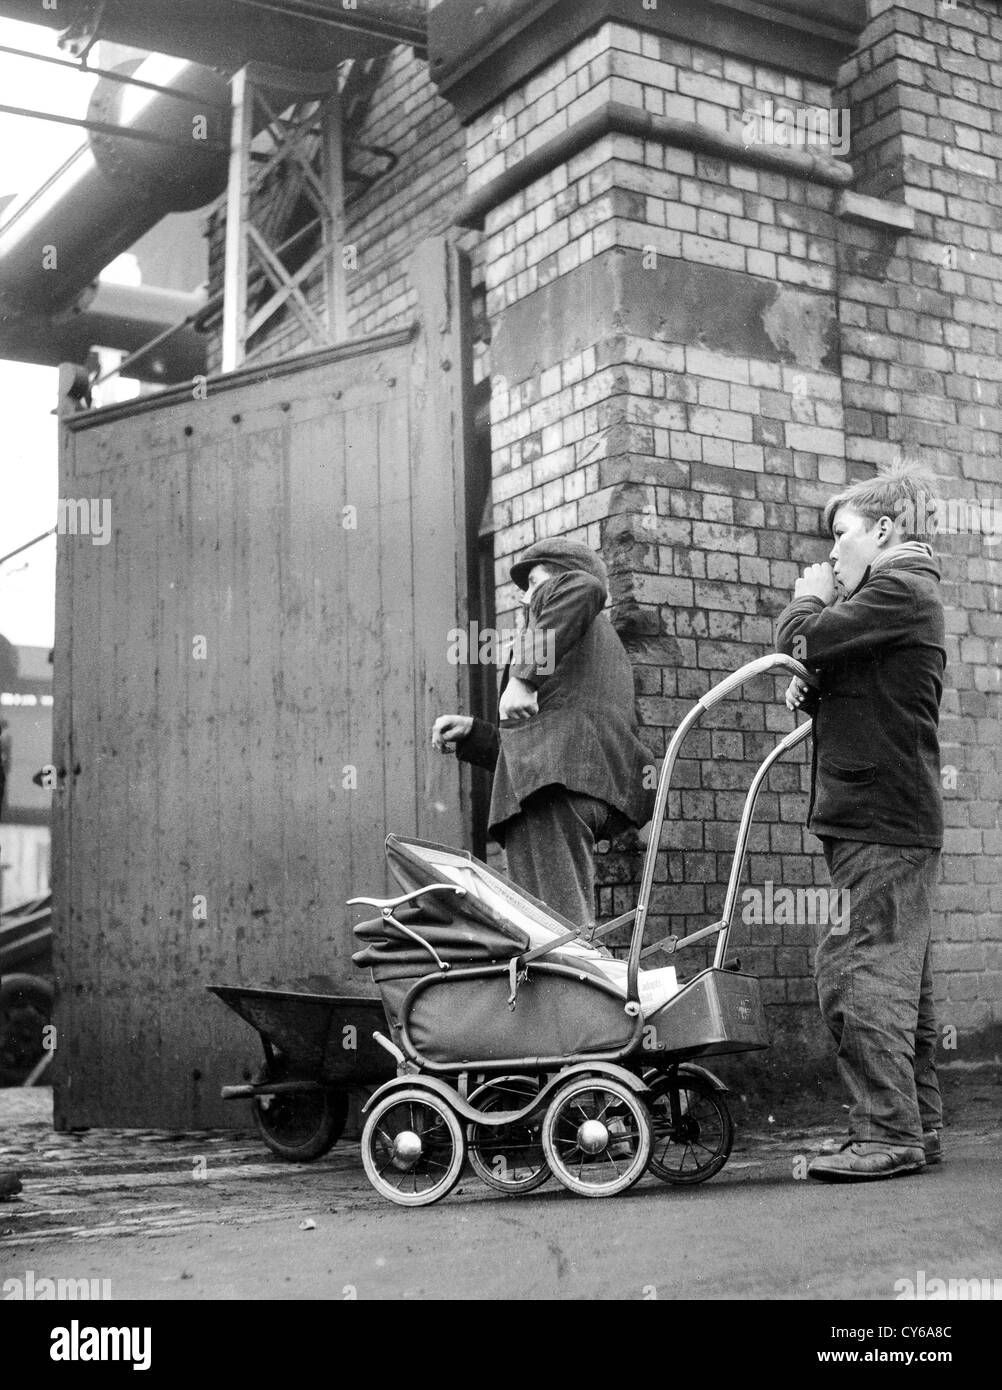 In attesa di raccogliere coke da Dudley gas Works nel West Midlands 1954. Uomo di lavoro Gran Bretagna 1950 lavoratore britannico nero paese di lavoro classe povera stile di vita povertà storia sociale Foto Stock